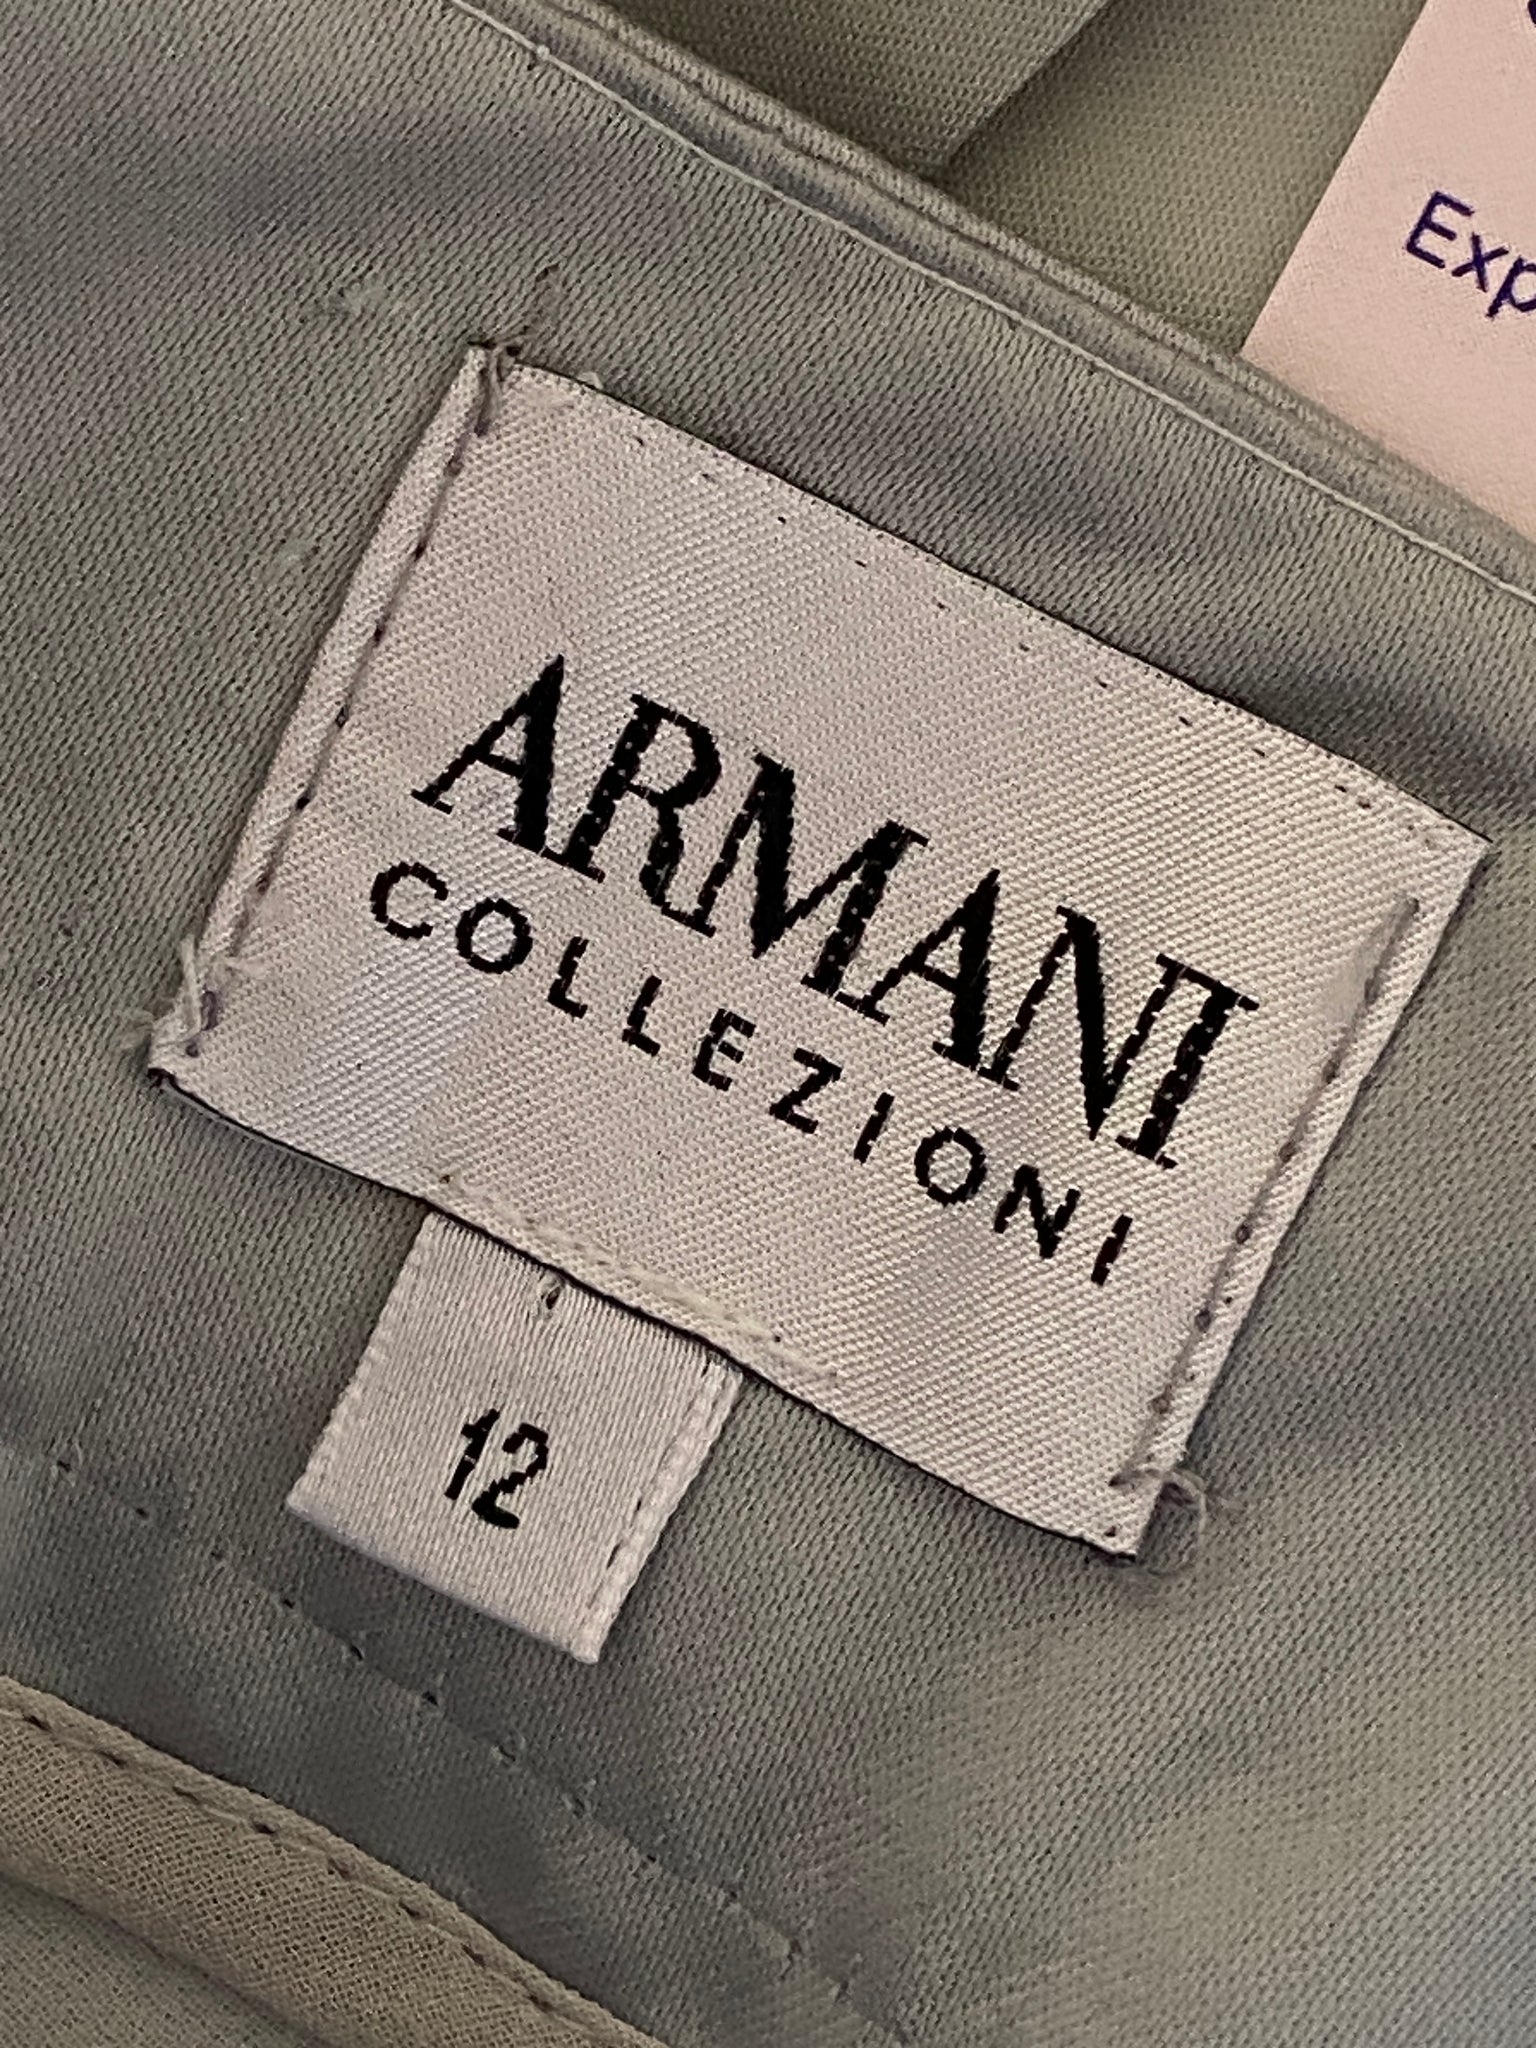 Vintage Armani Collezioni Light Blue Skirt Set (M)